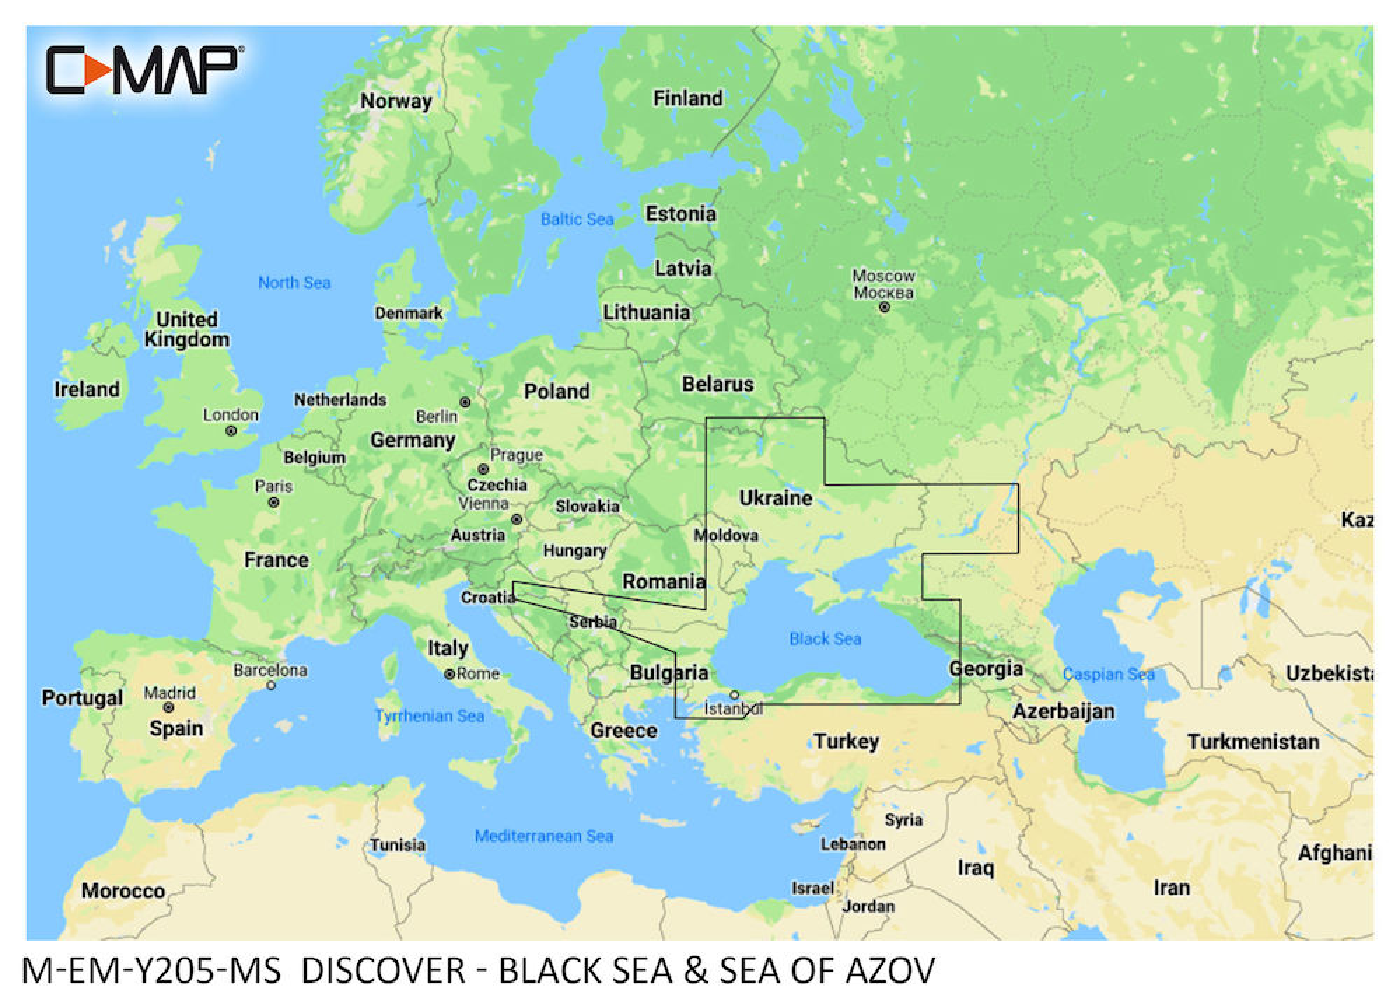 C-MAP Discover Mer Noire et mer d'Azov M-EM-Y205